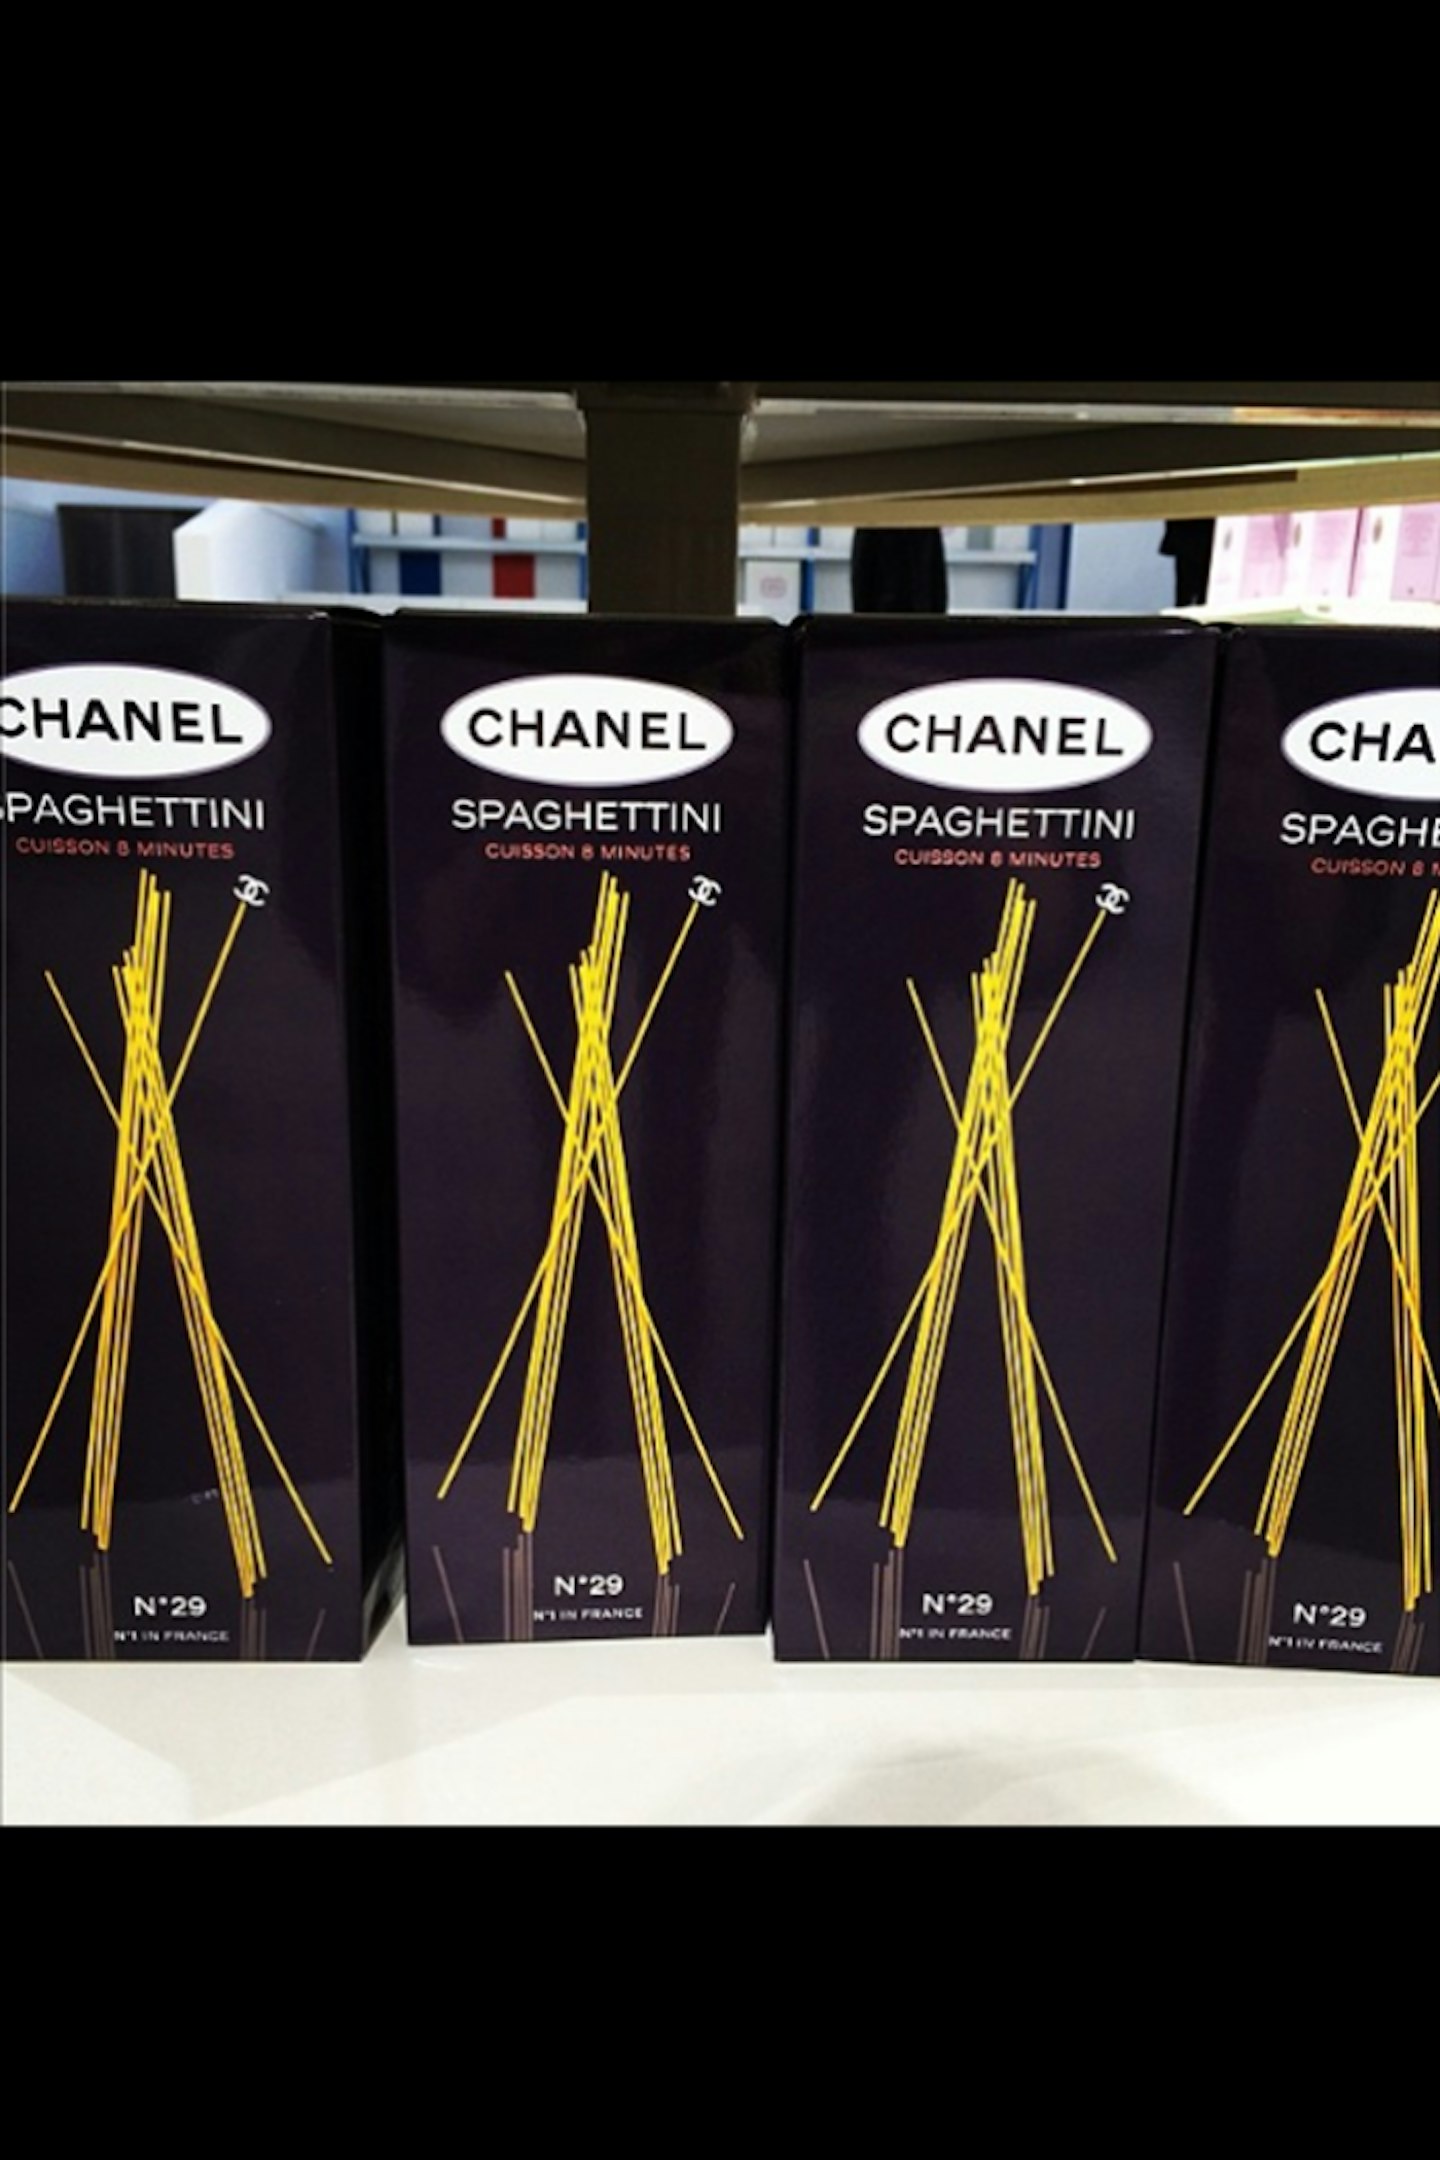 chanel-supermarket-spaghetti